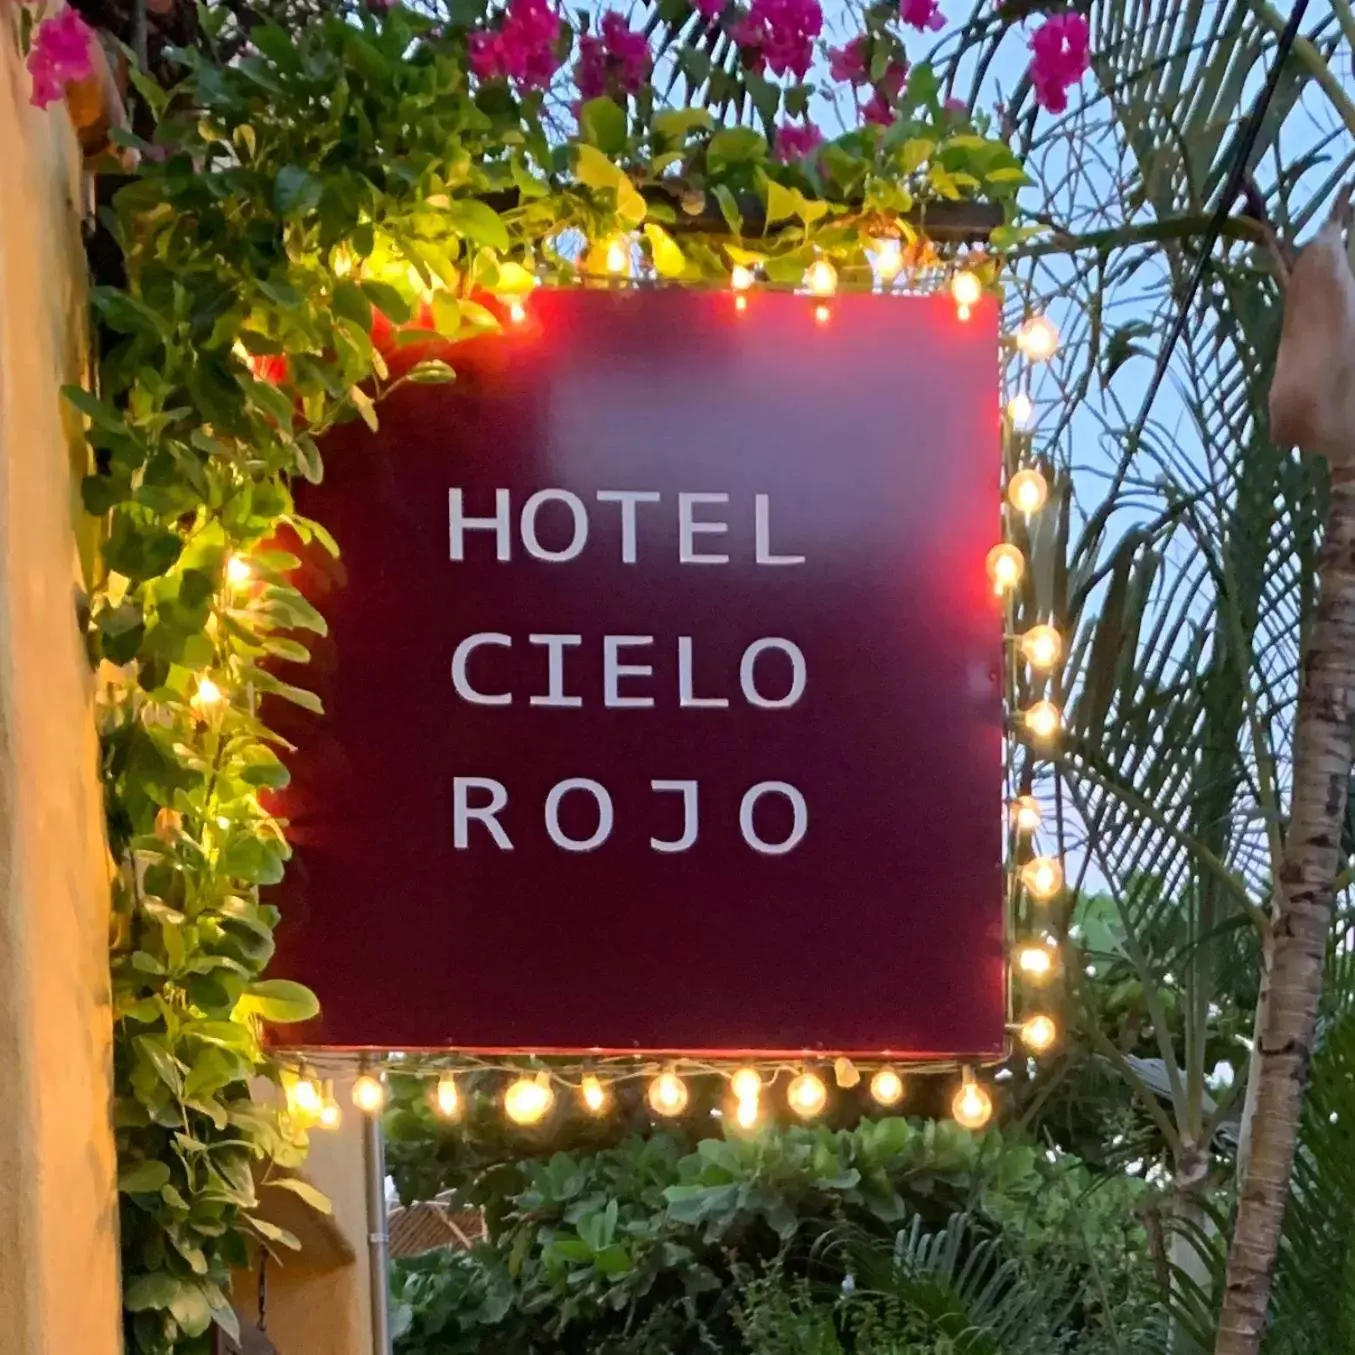 Property logo or sign in Hotel Cielo Rojo